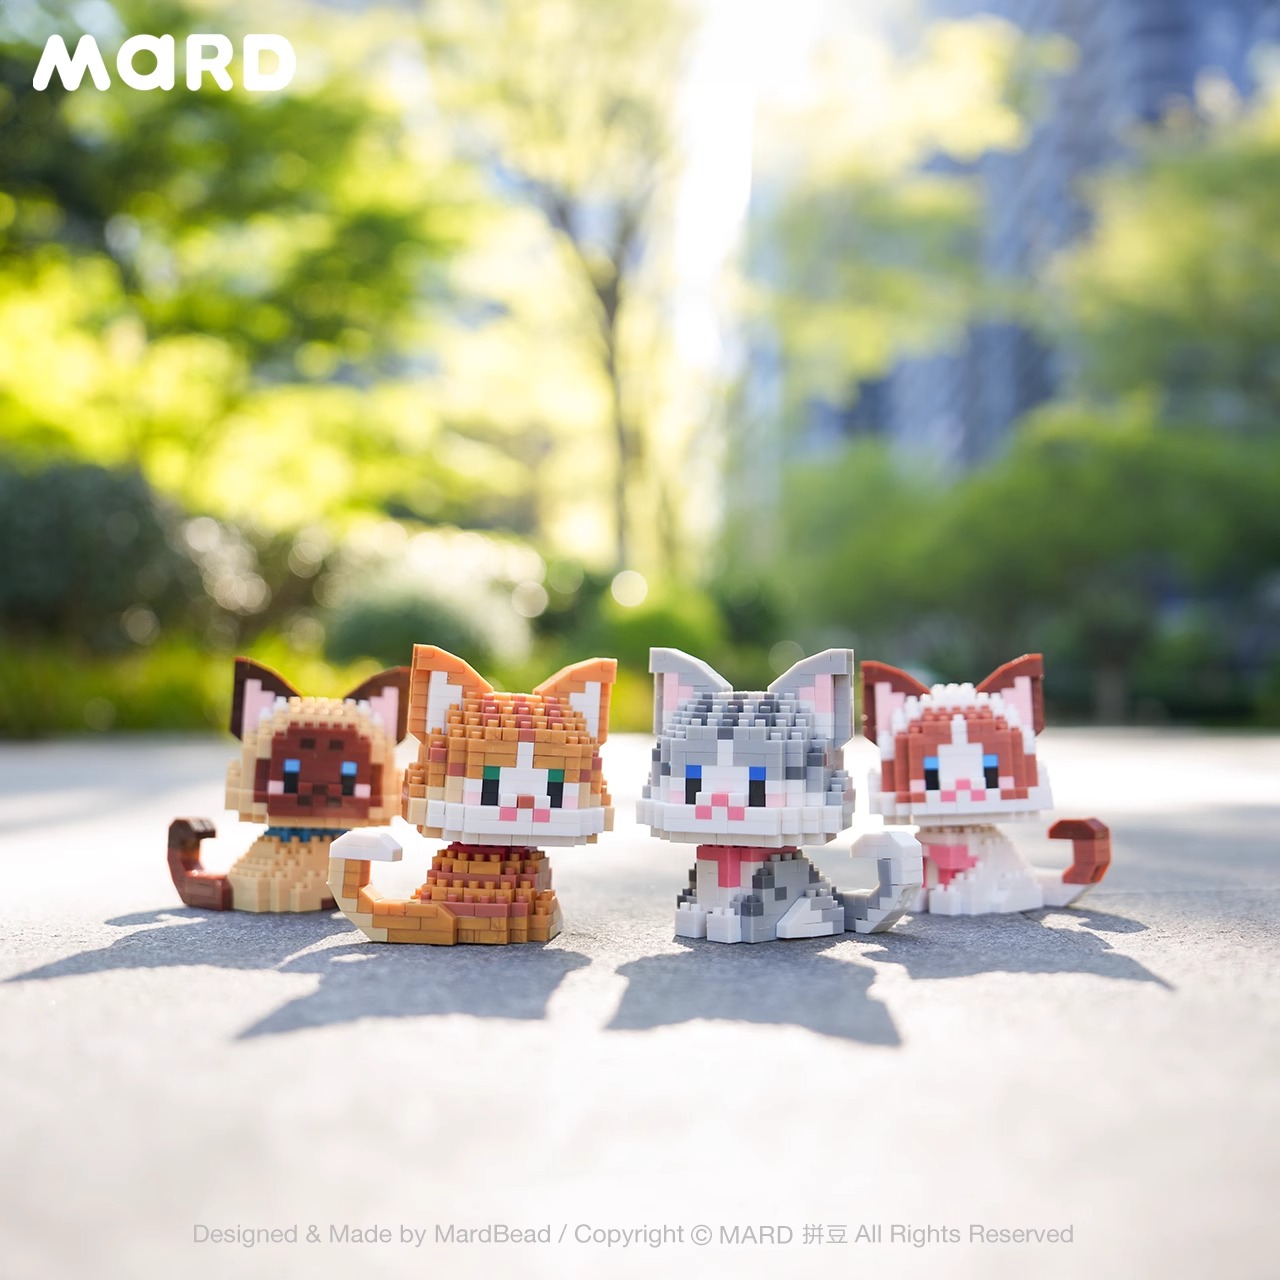 治愈系女孩系列小猫咪布偶暹罗猫橘猫微颗粒拼装积木玩具拼图礼物